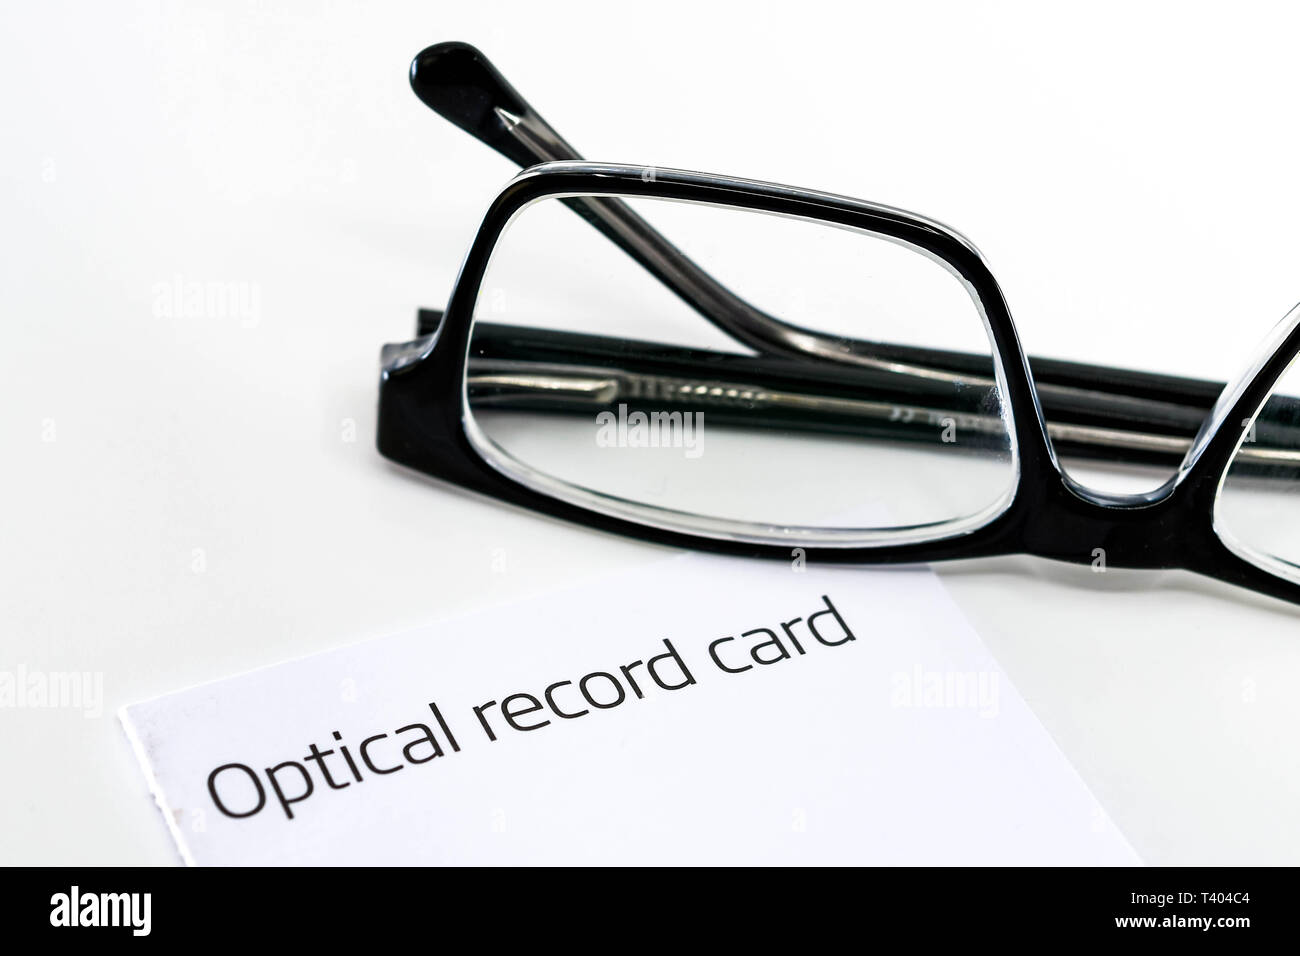 Registrazione ottica card con un paio di occhiali isolata contro uno sfondo bianco Foto Stock